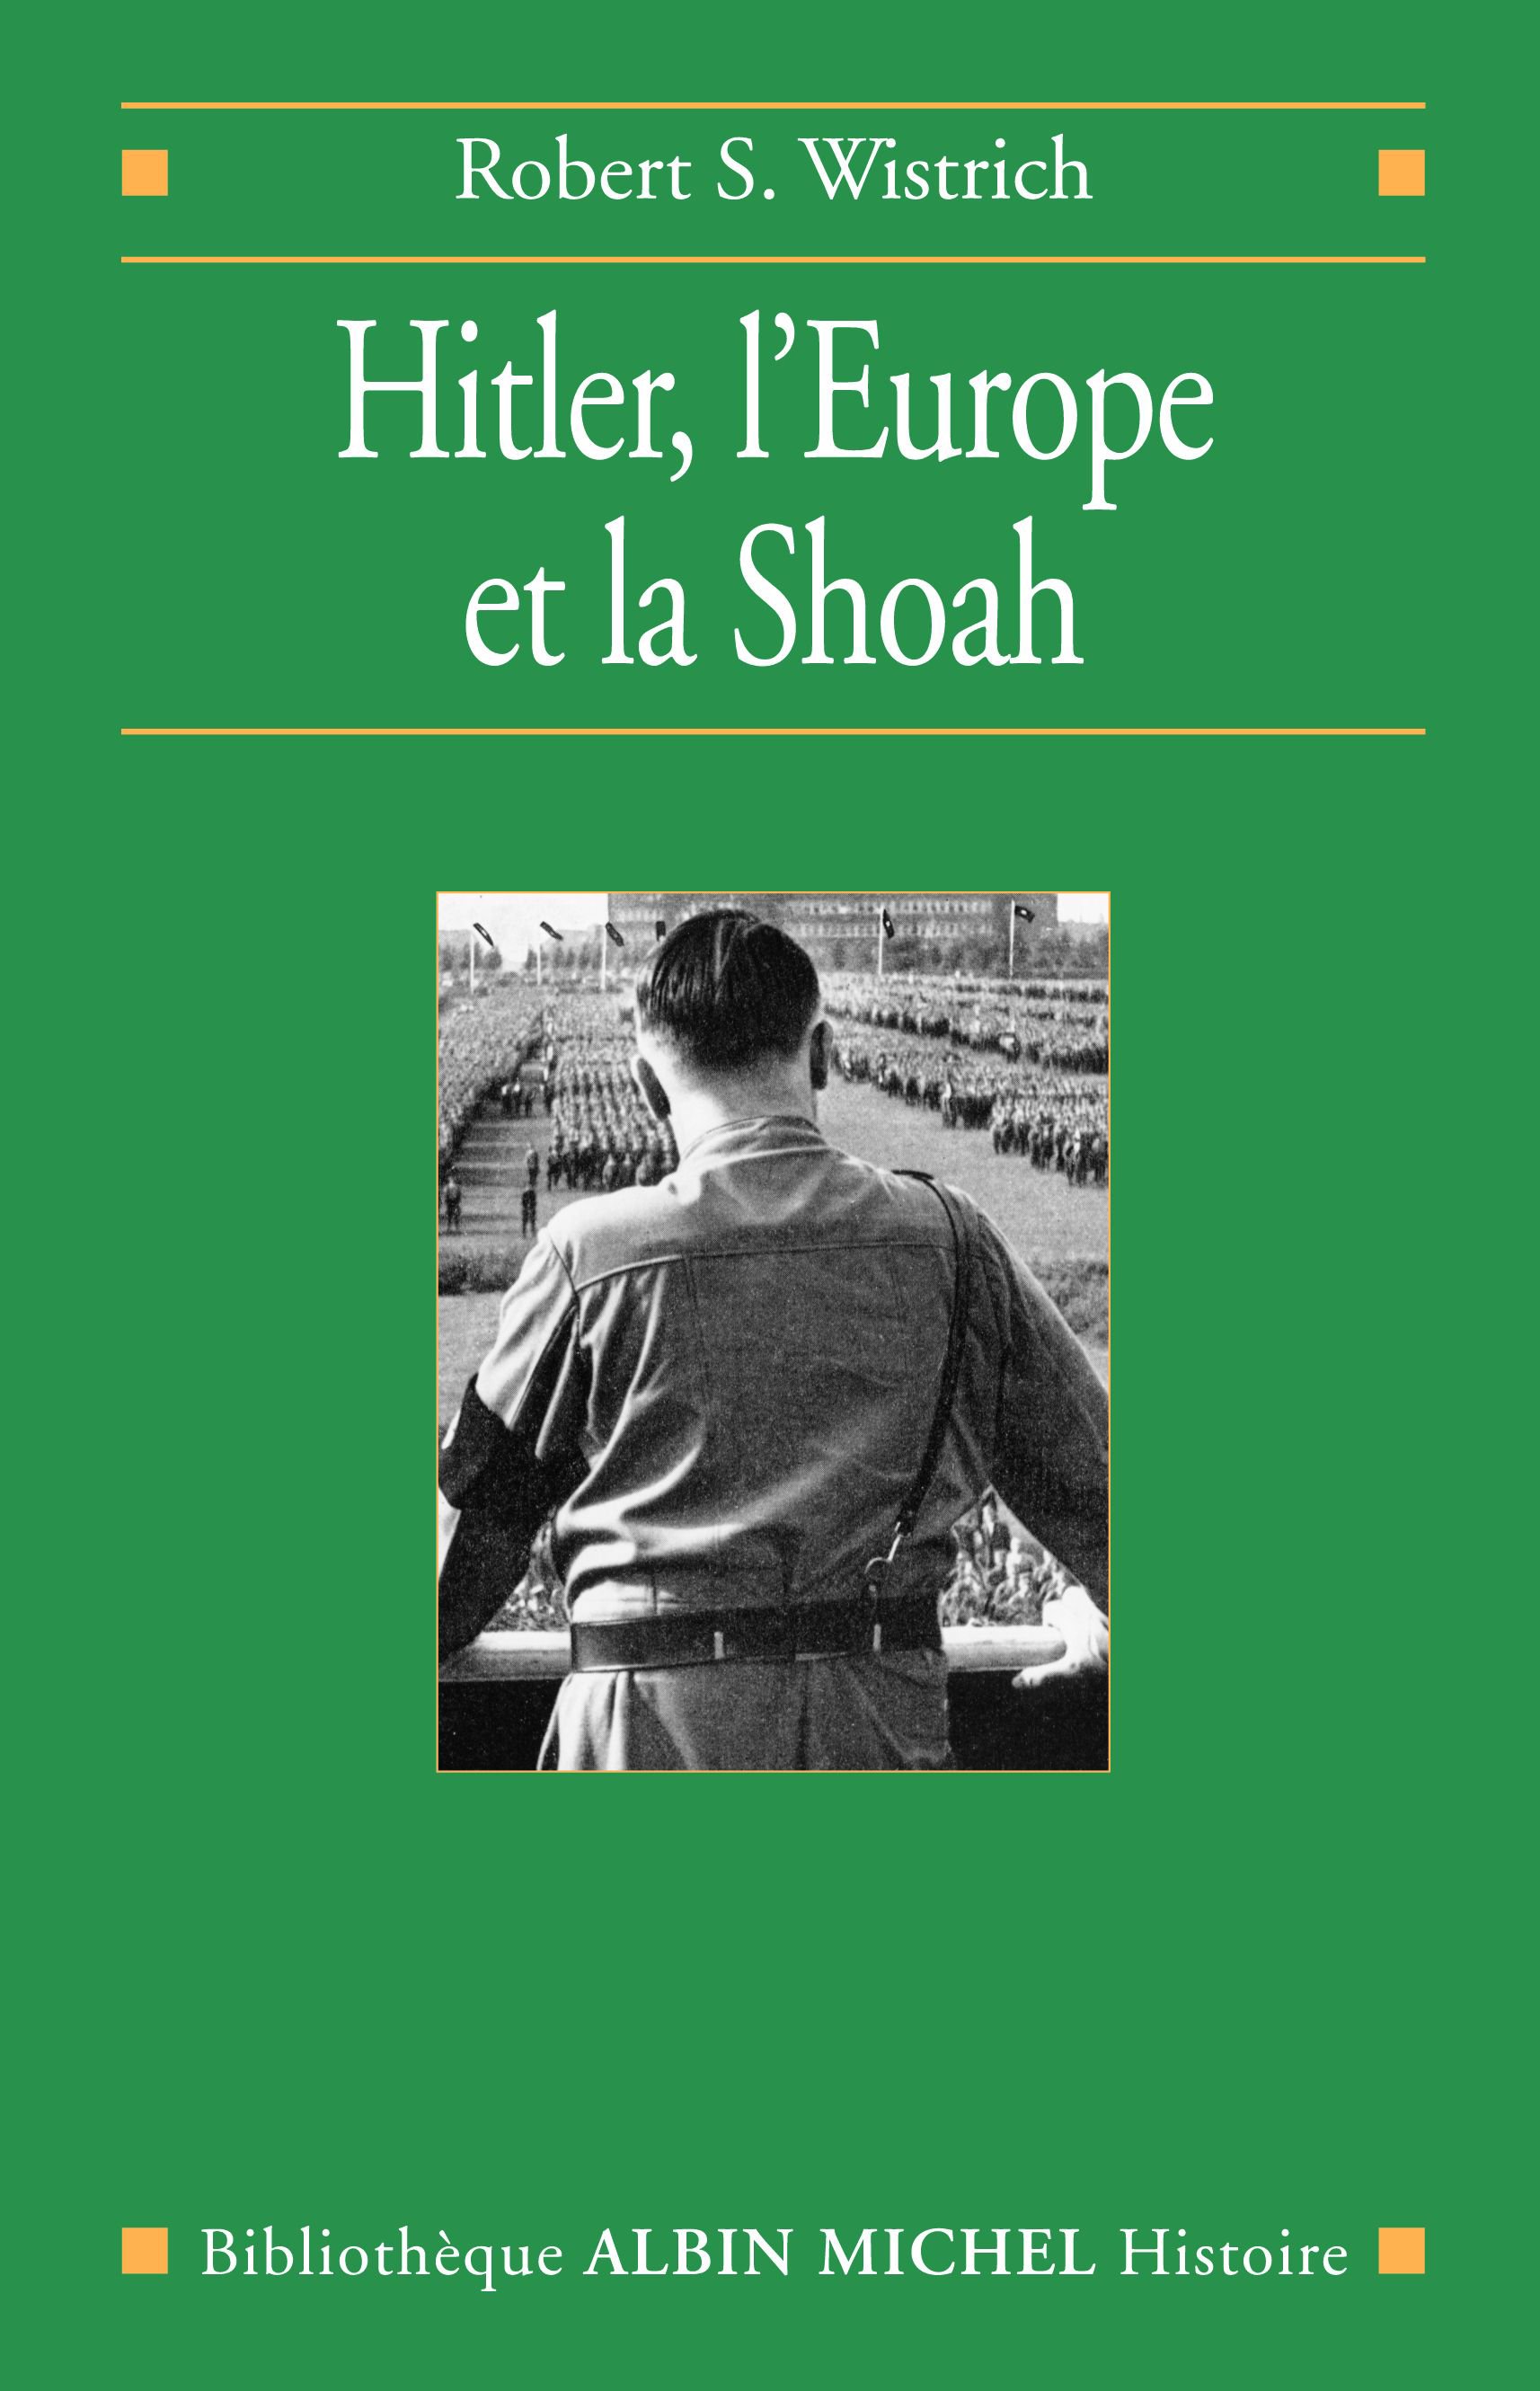 Couverture du livre Hitler, l'Europe et la Shoah